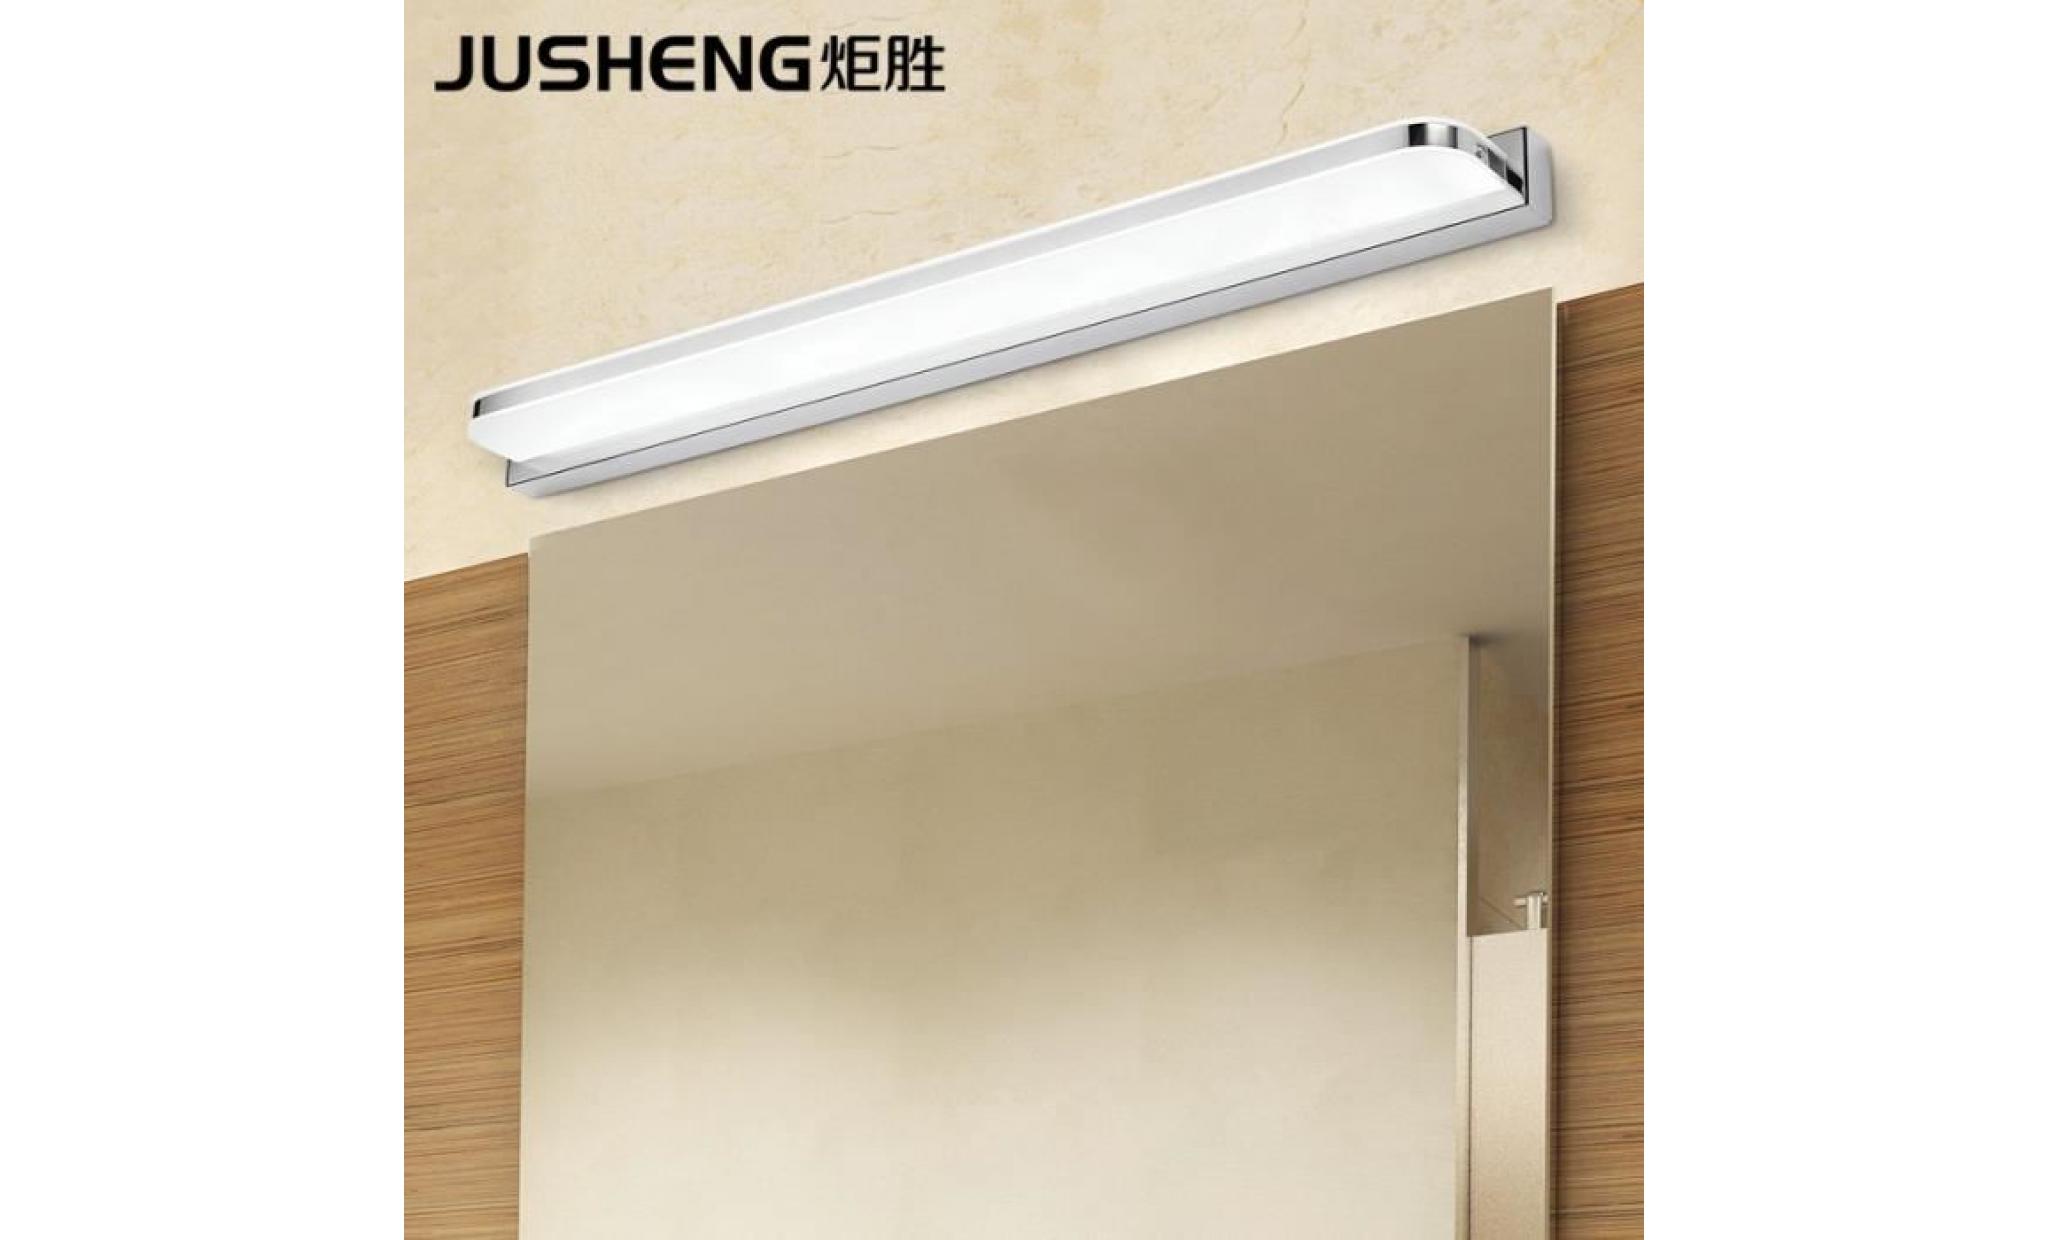 14w 62cm applique de salle de bain simple acrylique luminaires de salle de bains